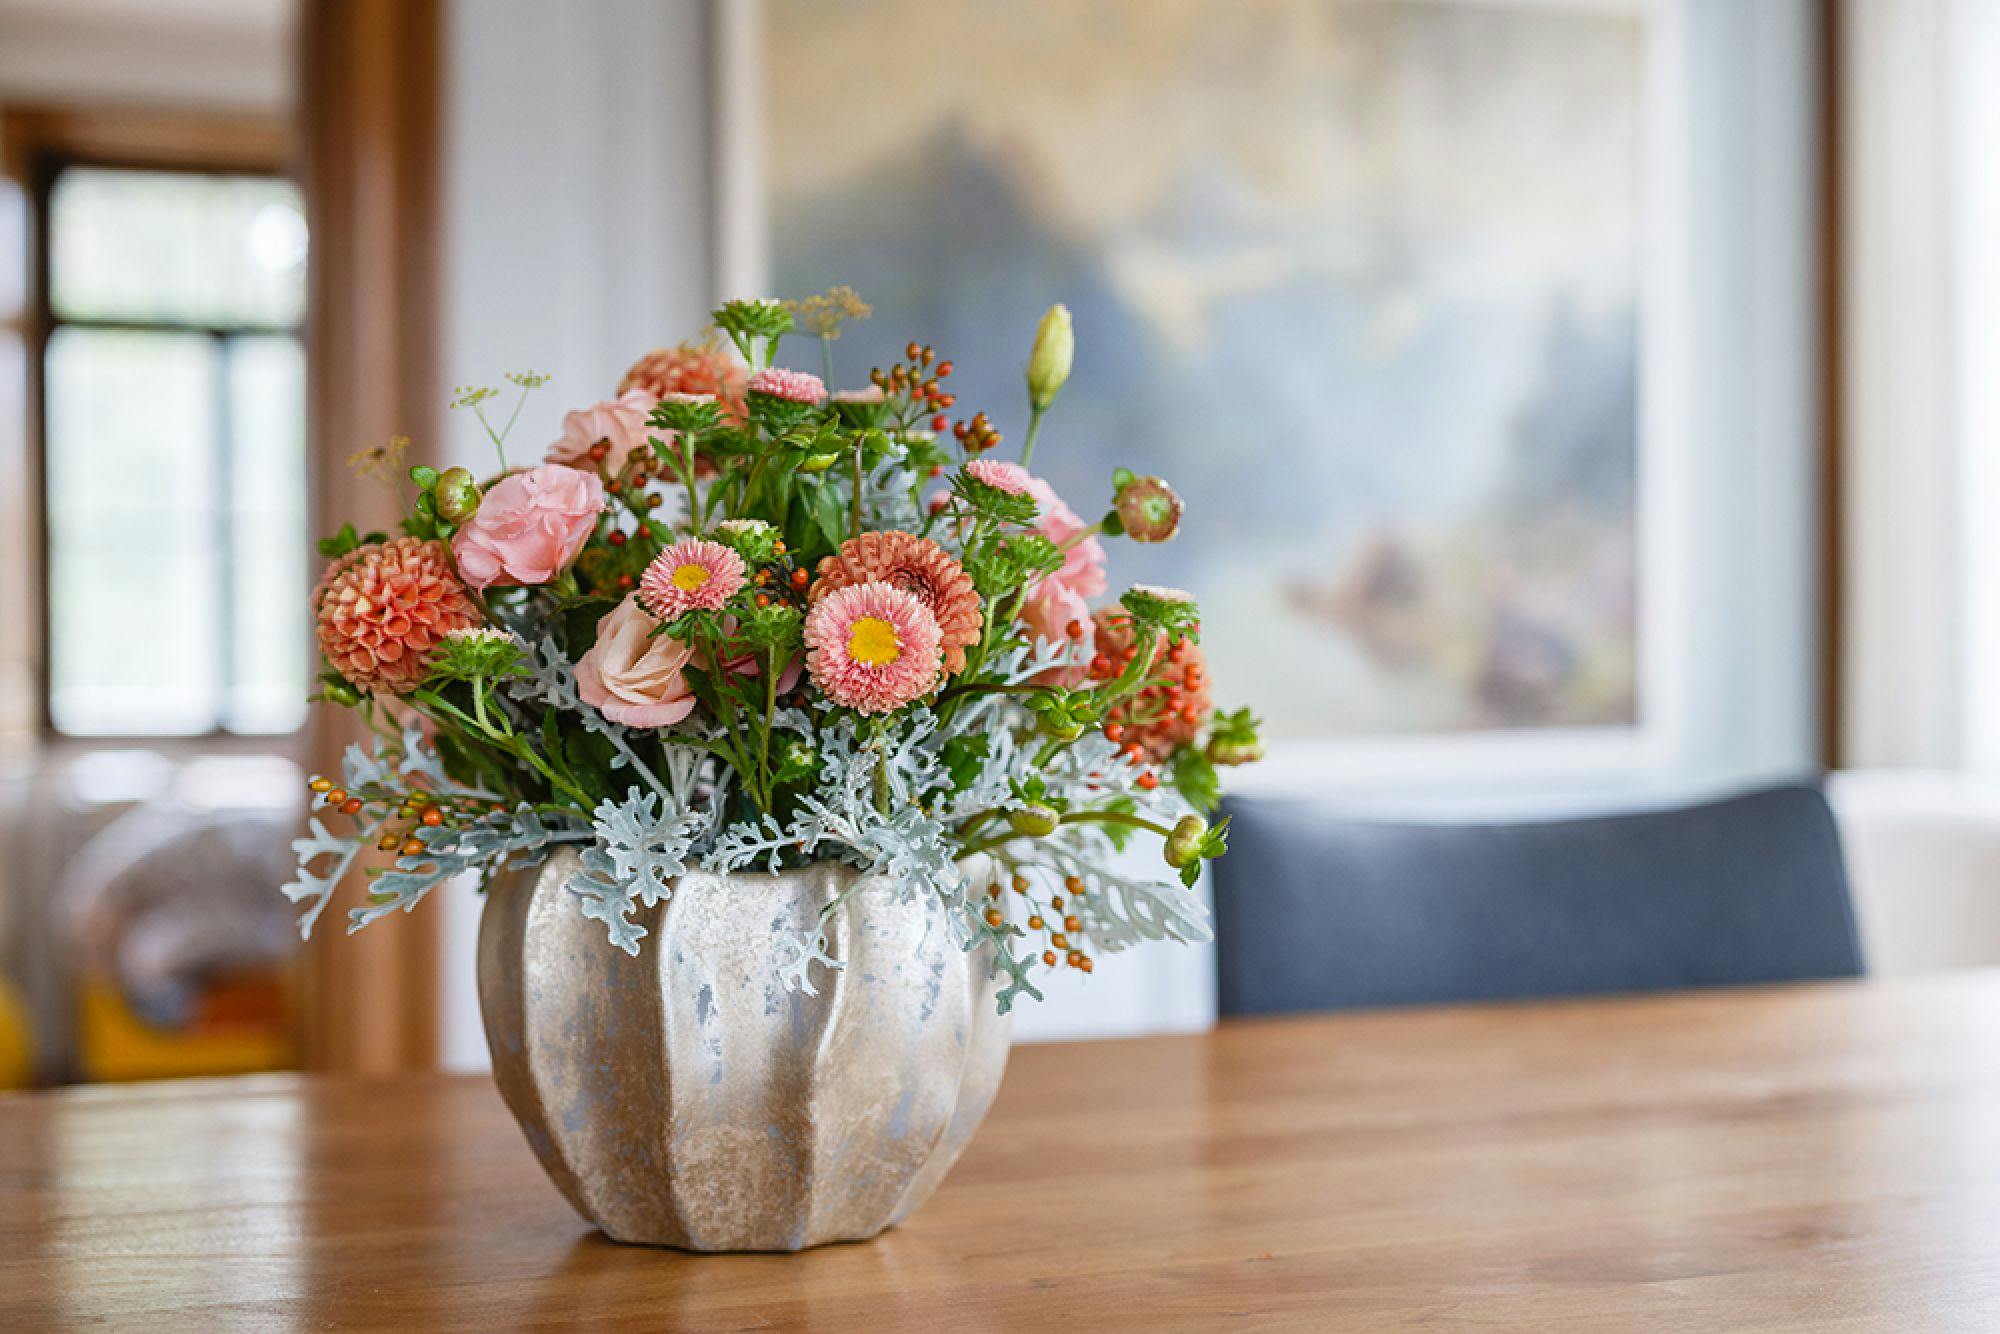 Bunter Blumenstrauß in einer silbernen Vase auf einem Holztisch, interieurbezogener Hintergrund.